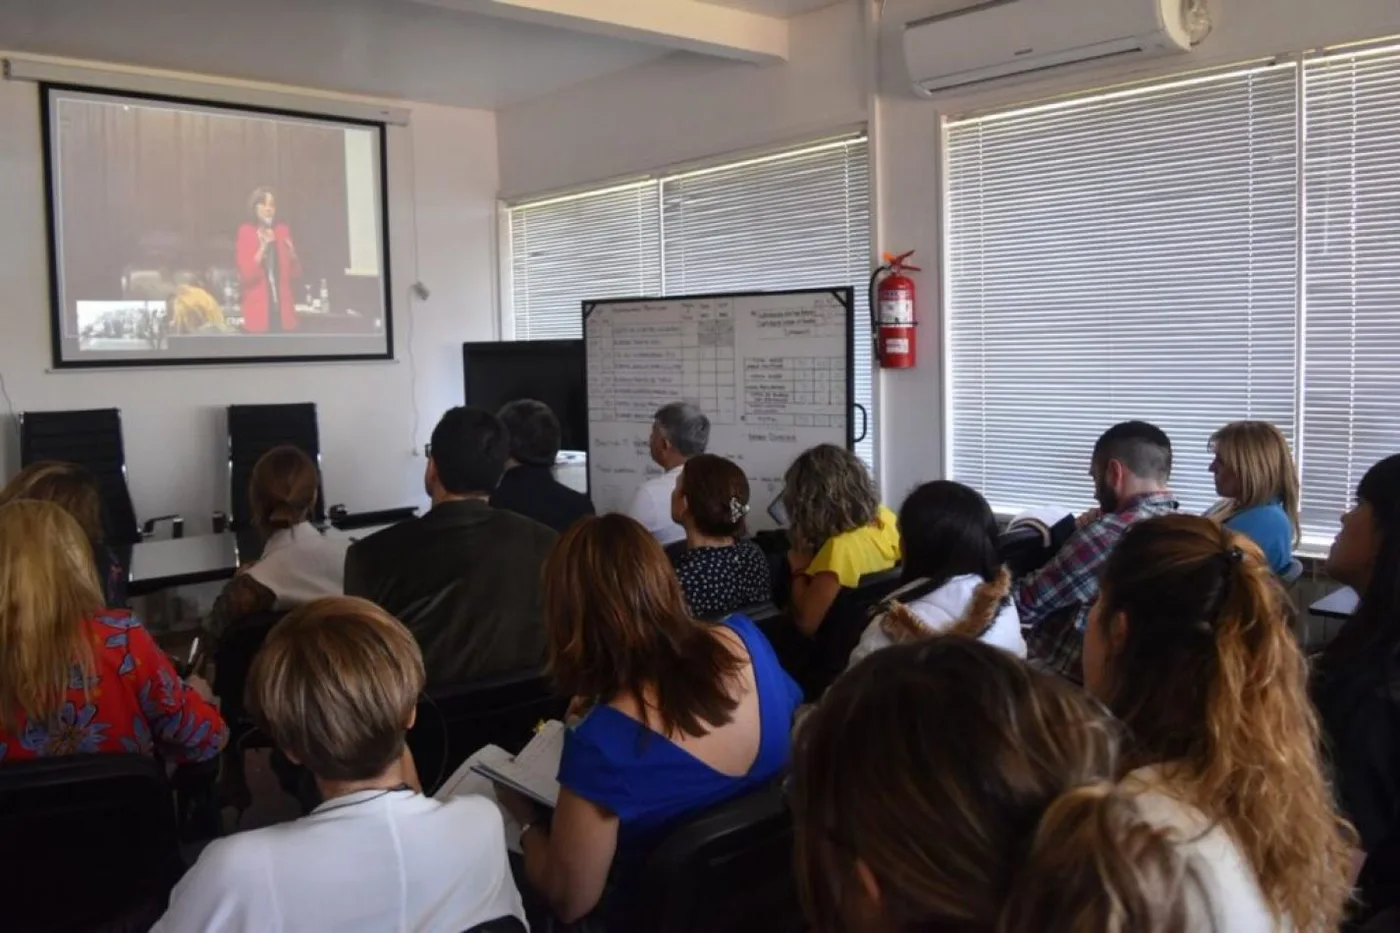 La Doctora Battaini expuso sobre “Género y Legítima Defensa” ante un nutrido auditorio